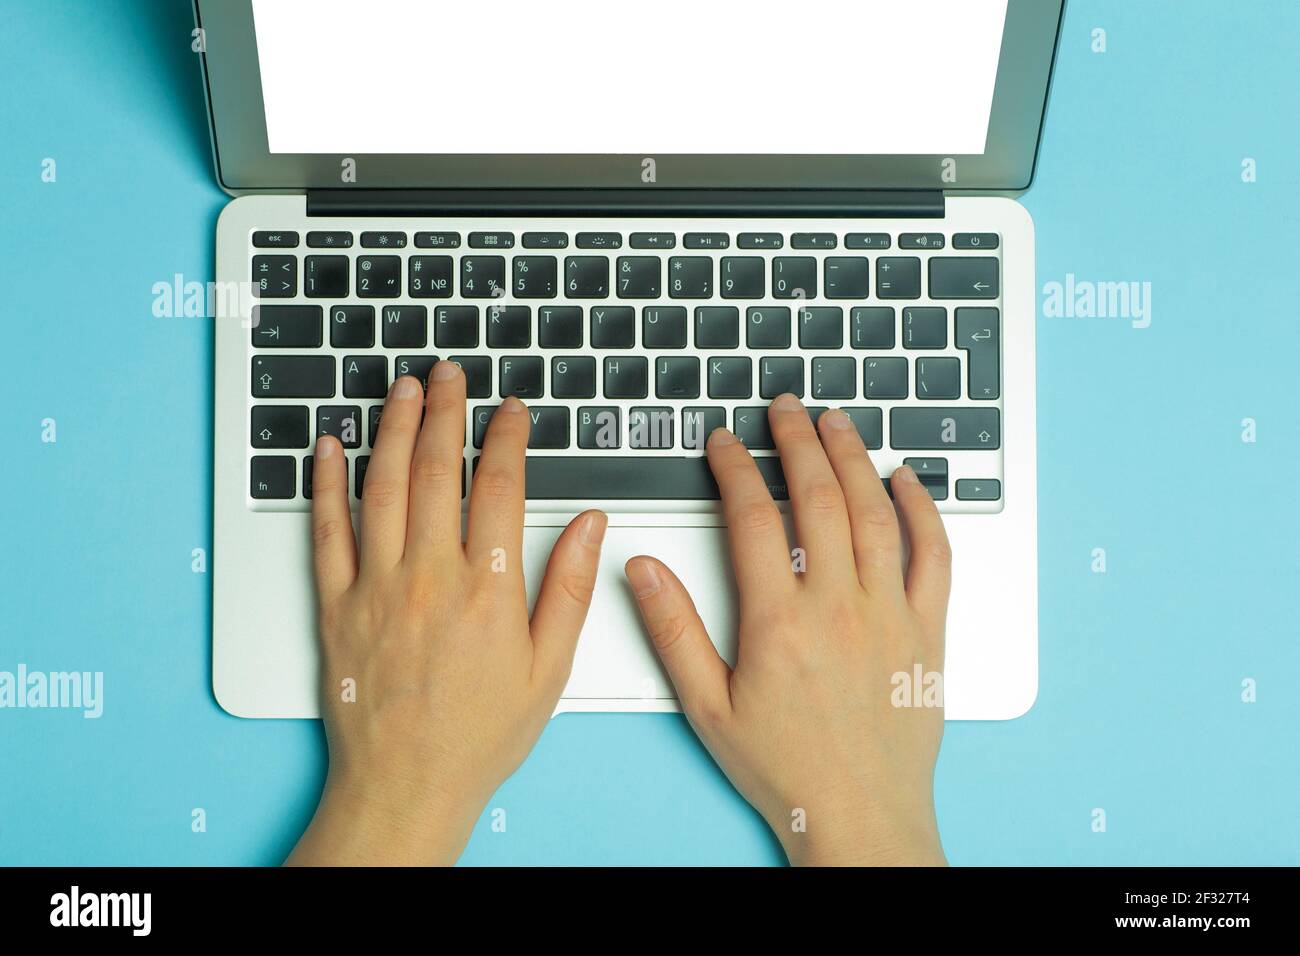 Les mains des femmes derrière un ordinateur portable. Les mains des femmes  travaillent sur un clavier d'ordinateur sur Internet sur un fond bleu du  lieu de travail. Photo de haute qualité Photo